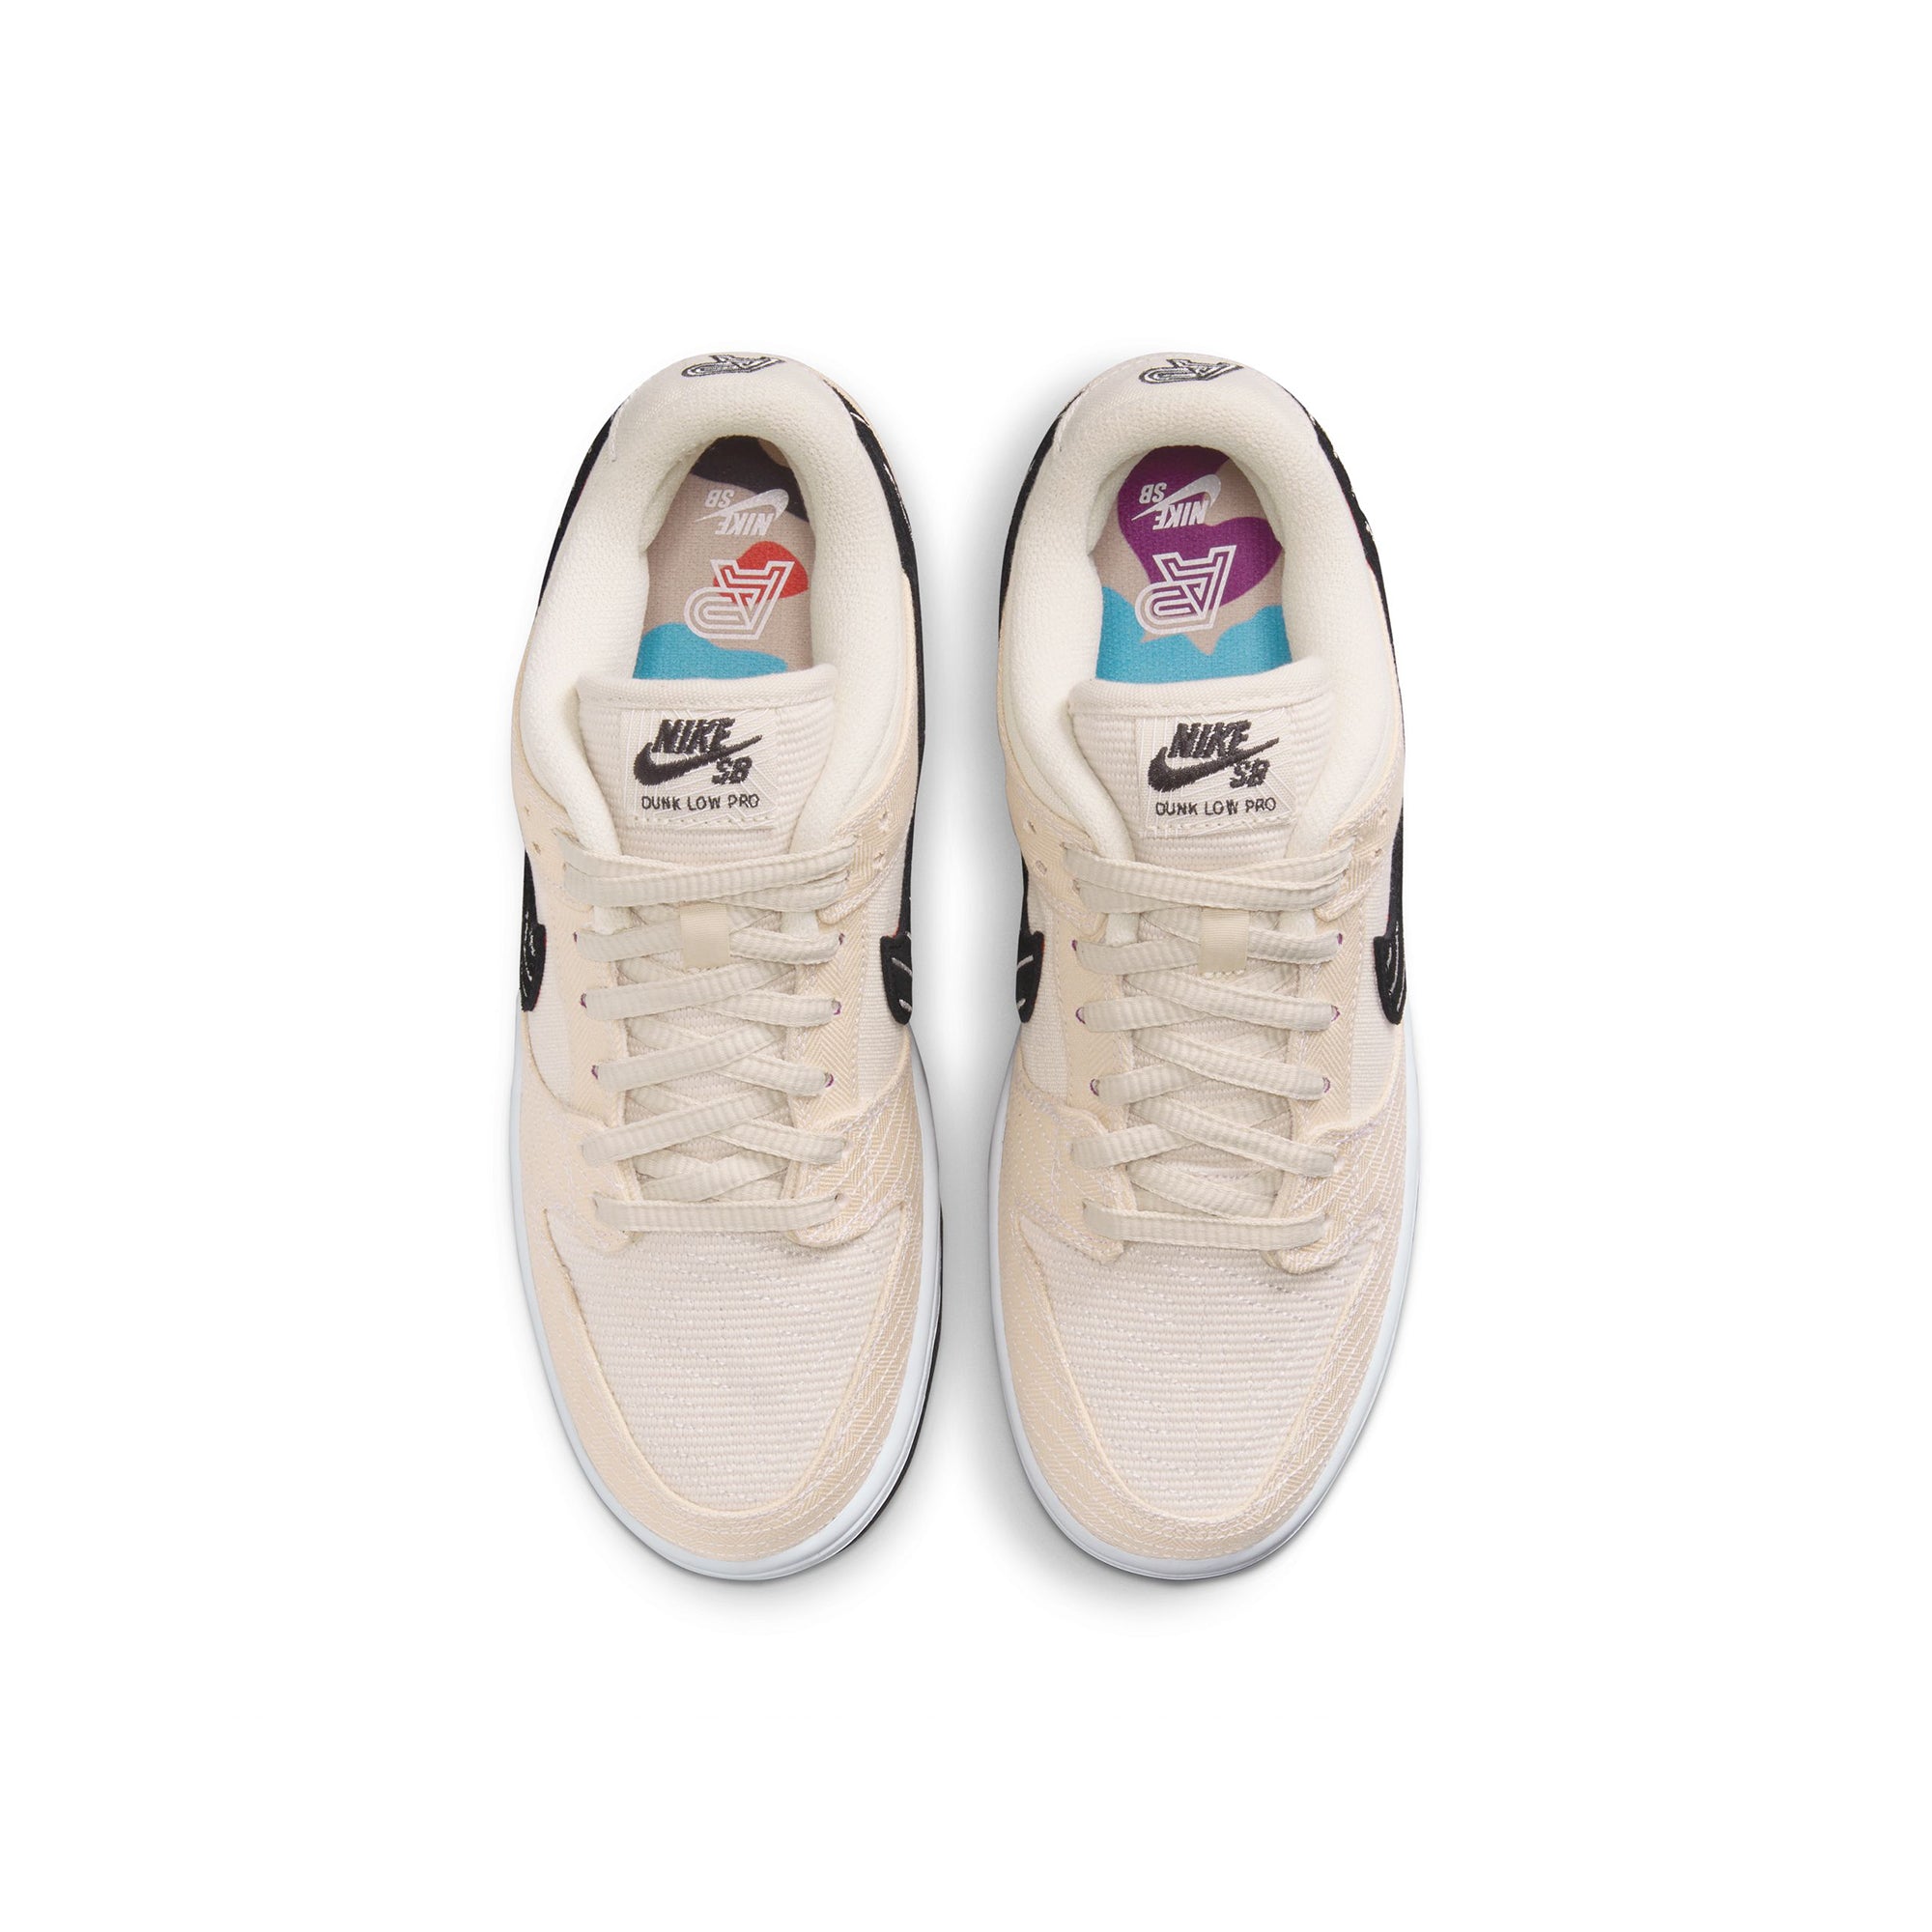 Nike SB Dunk Low Pro x Albino & Preto Shoes – Extra Butter